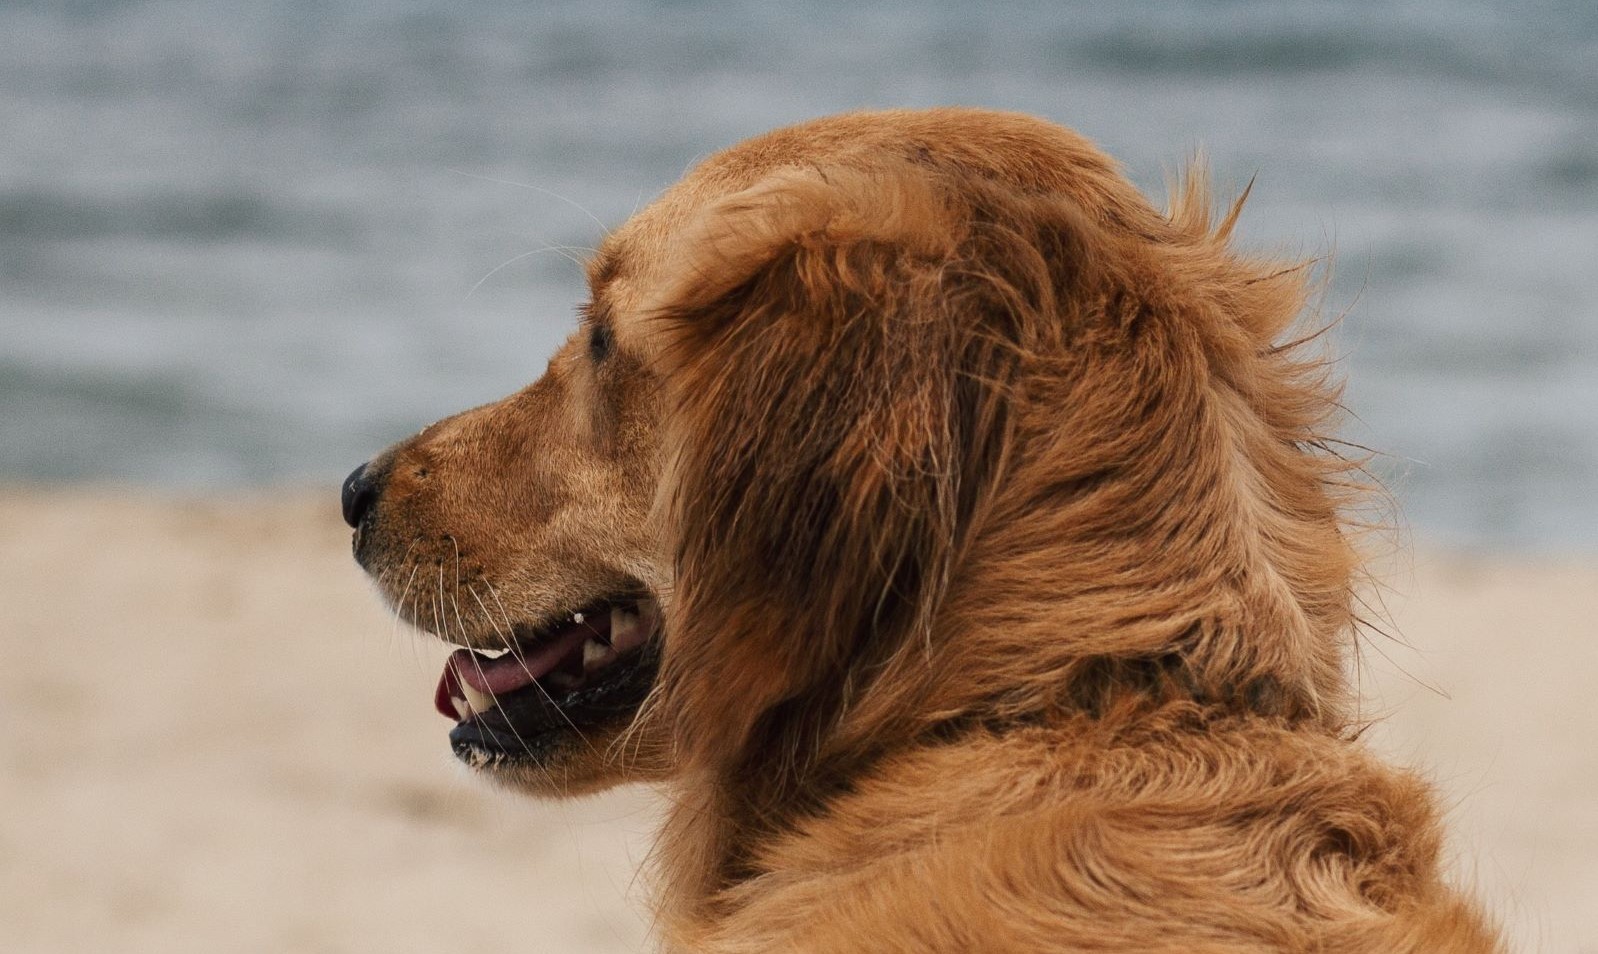 Camping Kroatien mit Hund - Hund am Strand schaut nach links und hechelt.